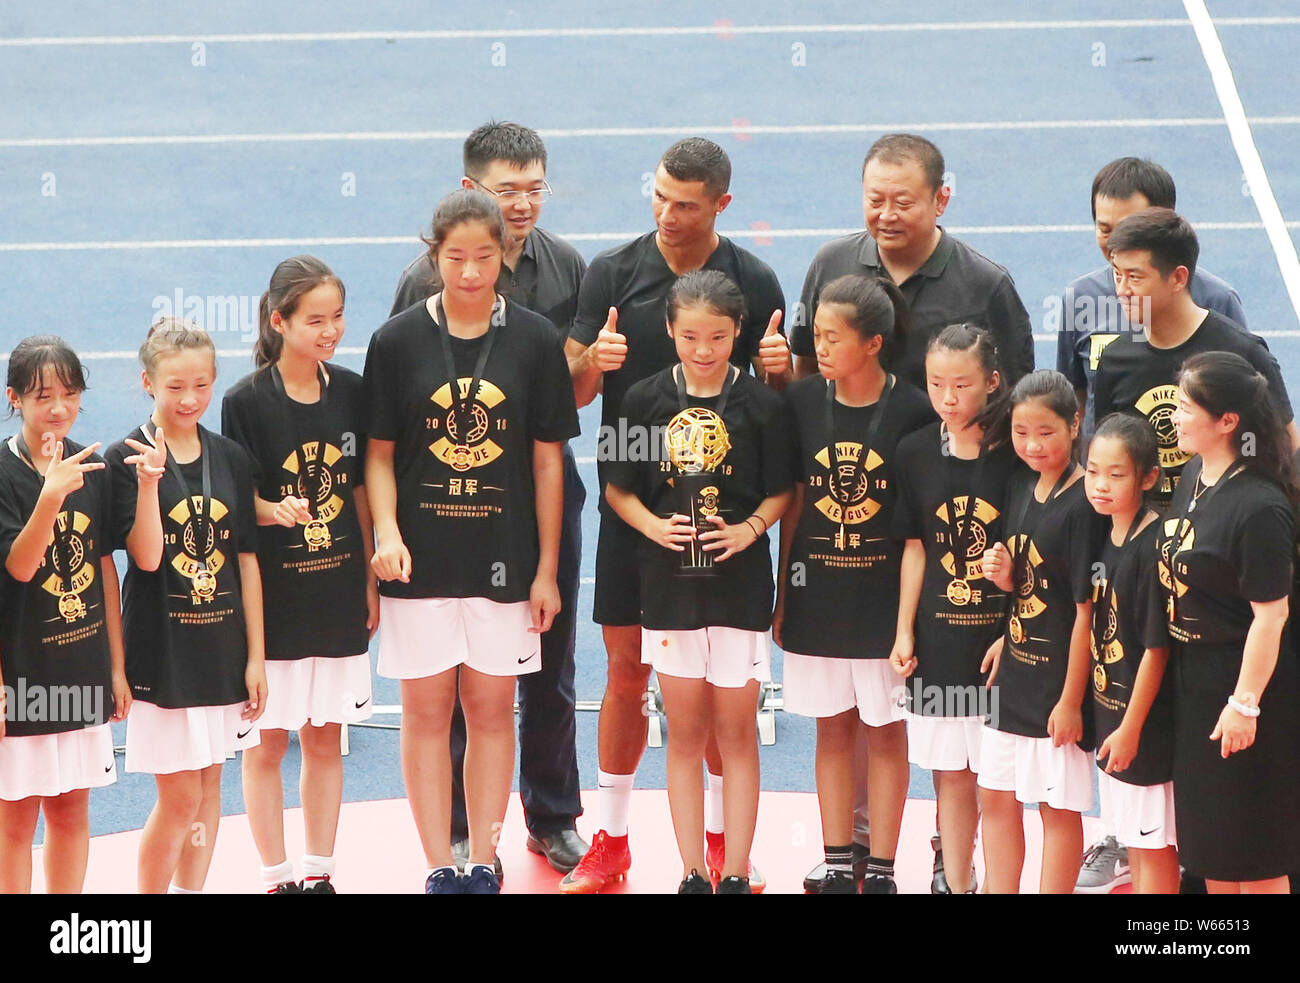 Joueur de football portugais Cristiano Ronaldo, centre, de la Juventus FC assiste à la finale de ligue à Nike 2018 Centre sportif olympique de Beijing, C Banque D'Images